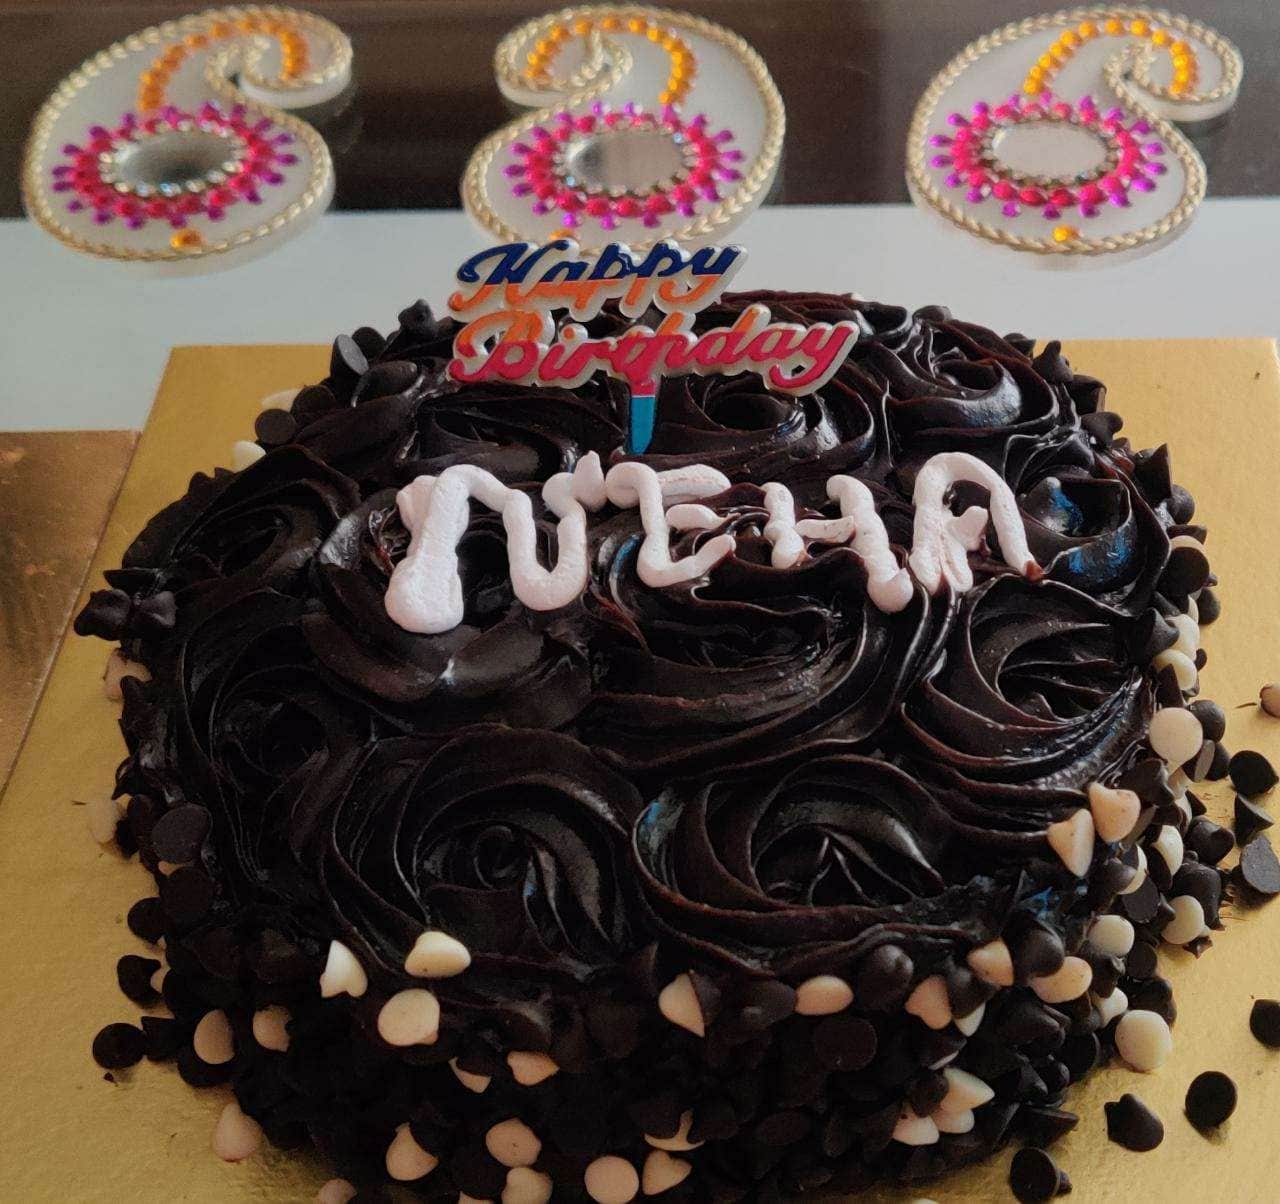 HappyBirthdayNeha***cake on pg1 & foods on pg2 | Nisha Aur Uske Cousins